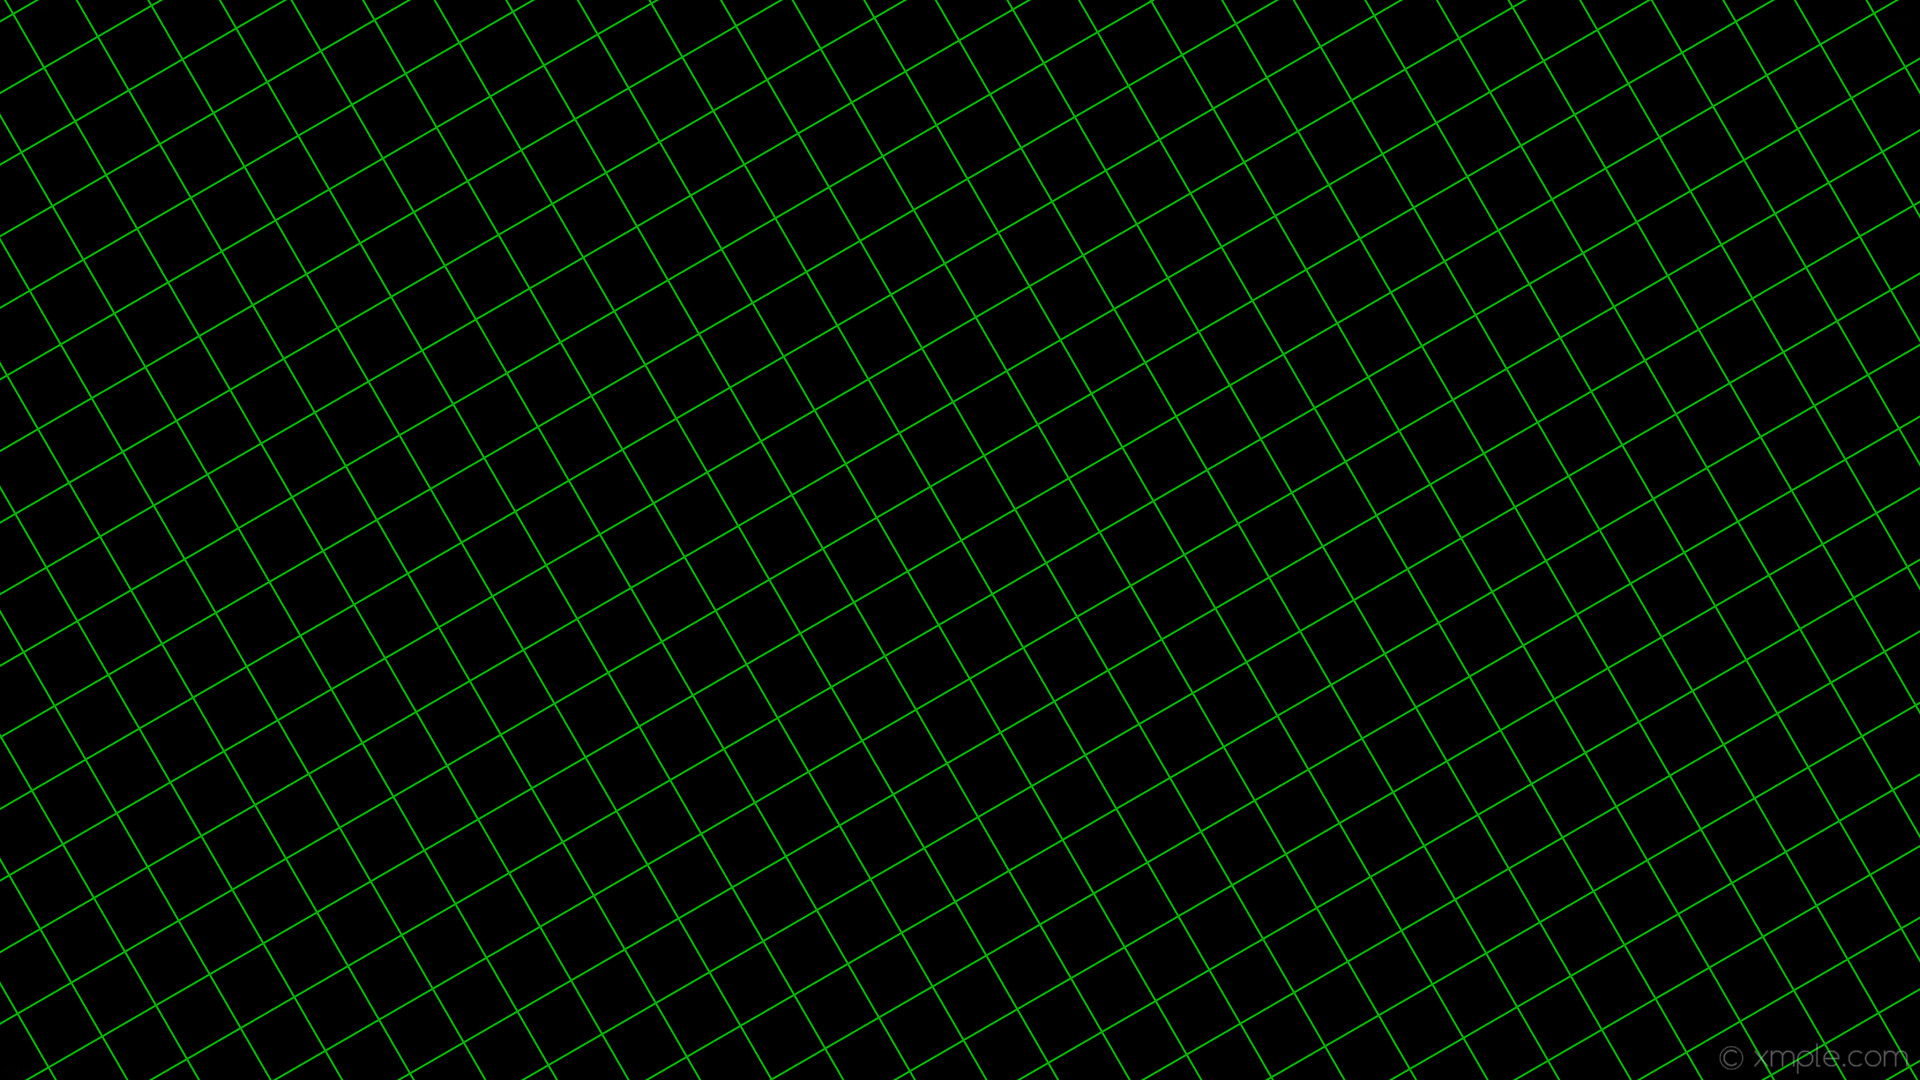 1920x1080 wallpaper graph paper black green grid lime #000000 #00ff00 30Â° 2px 62px